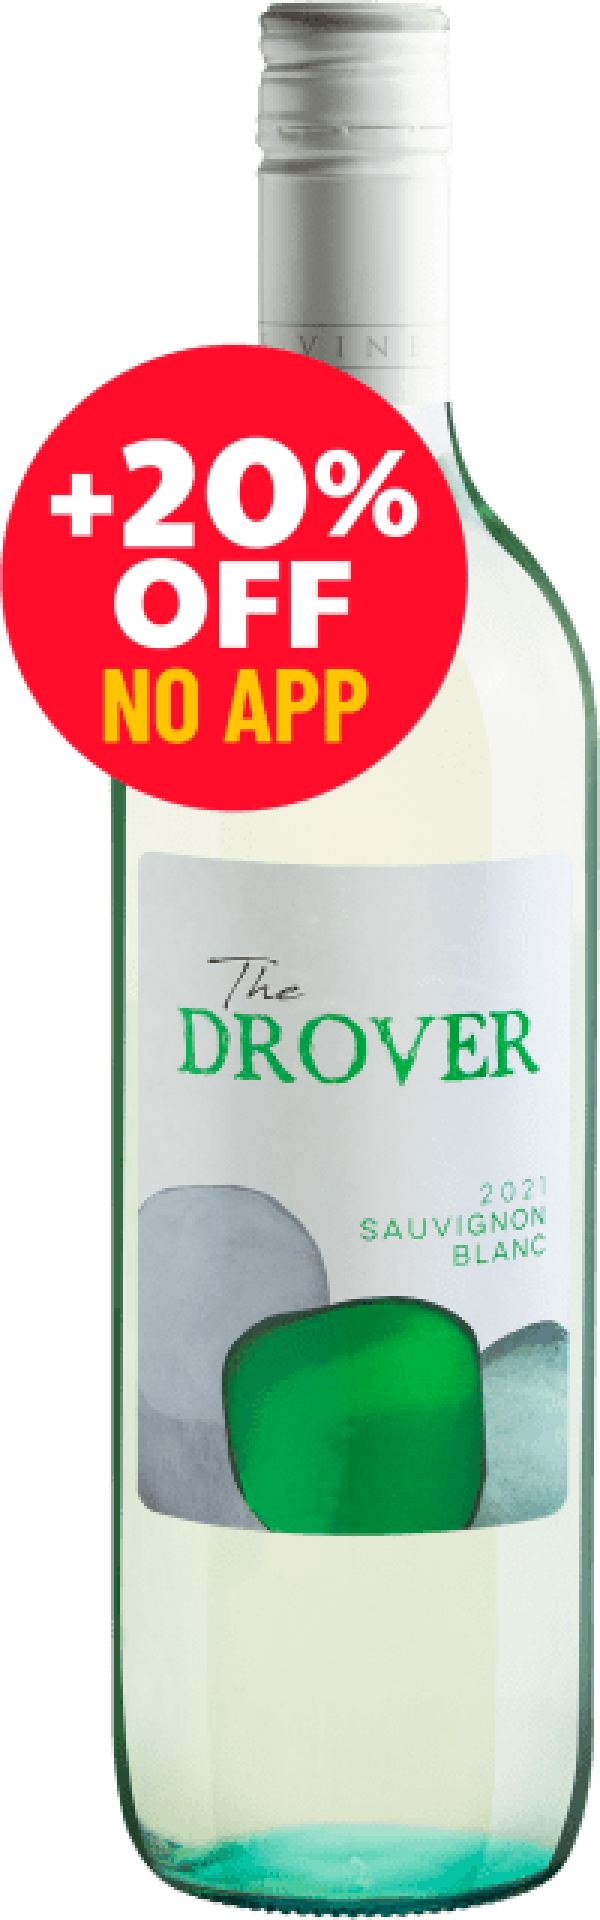 The Drover Sauvignon Blanc 2021